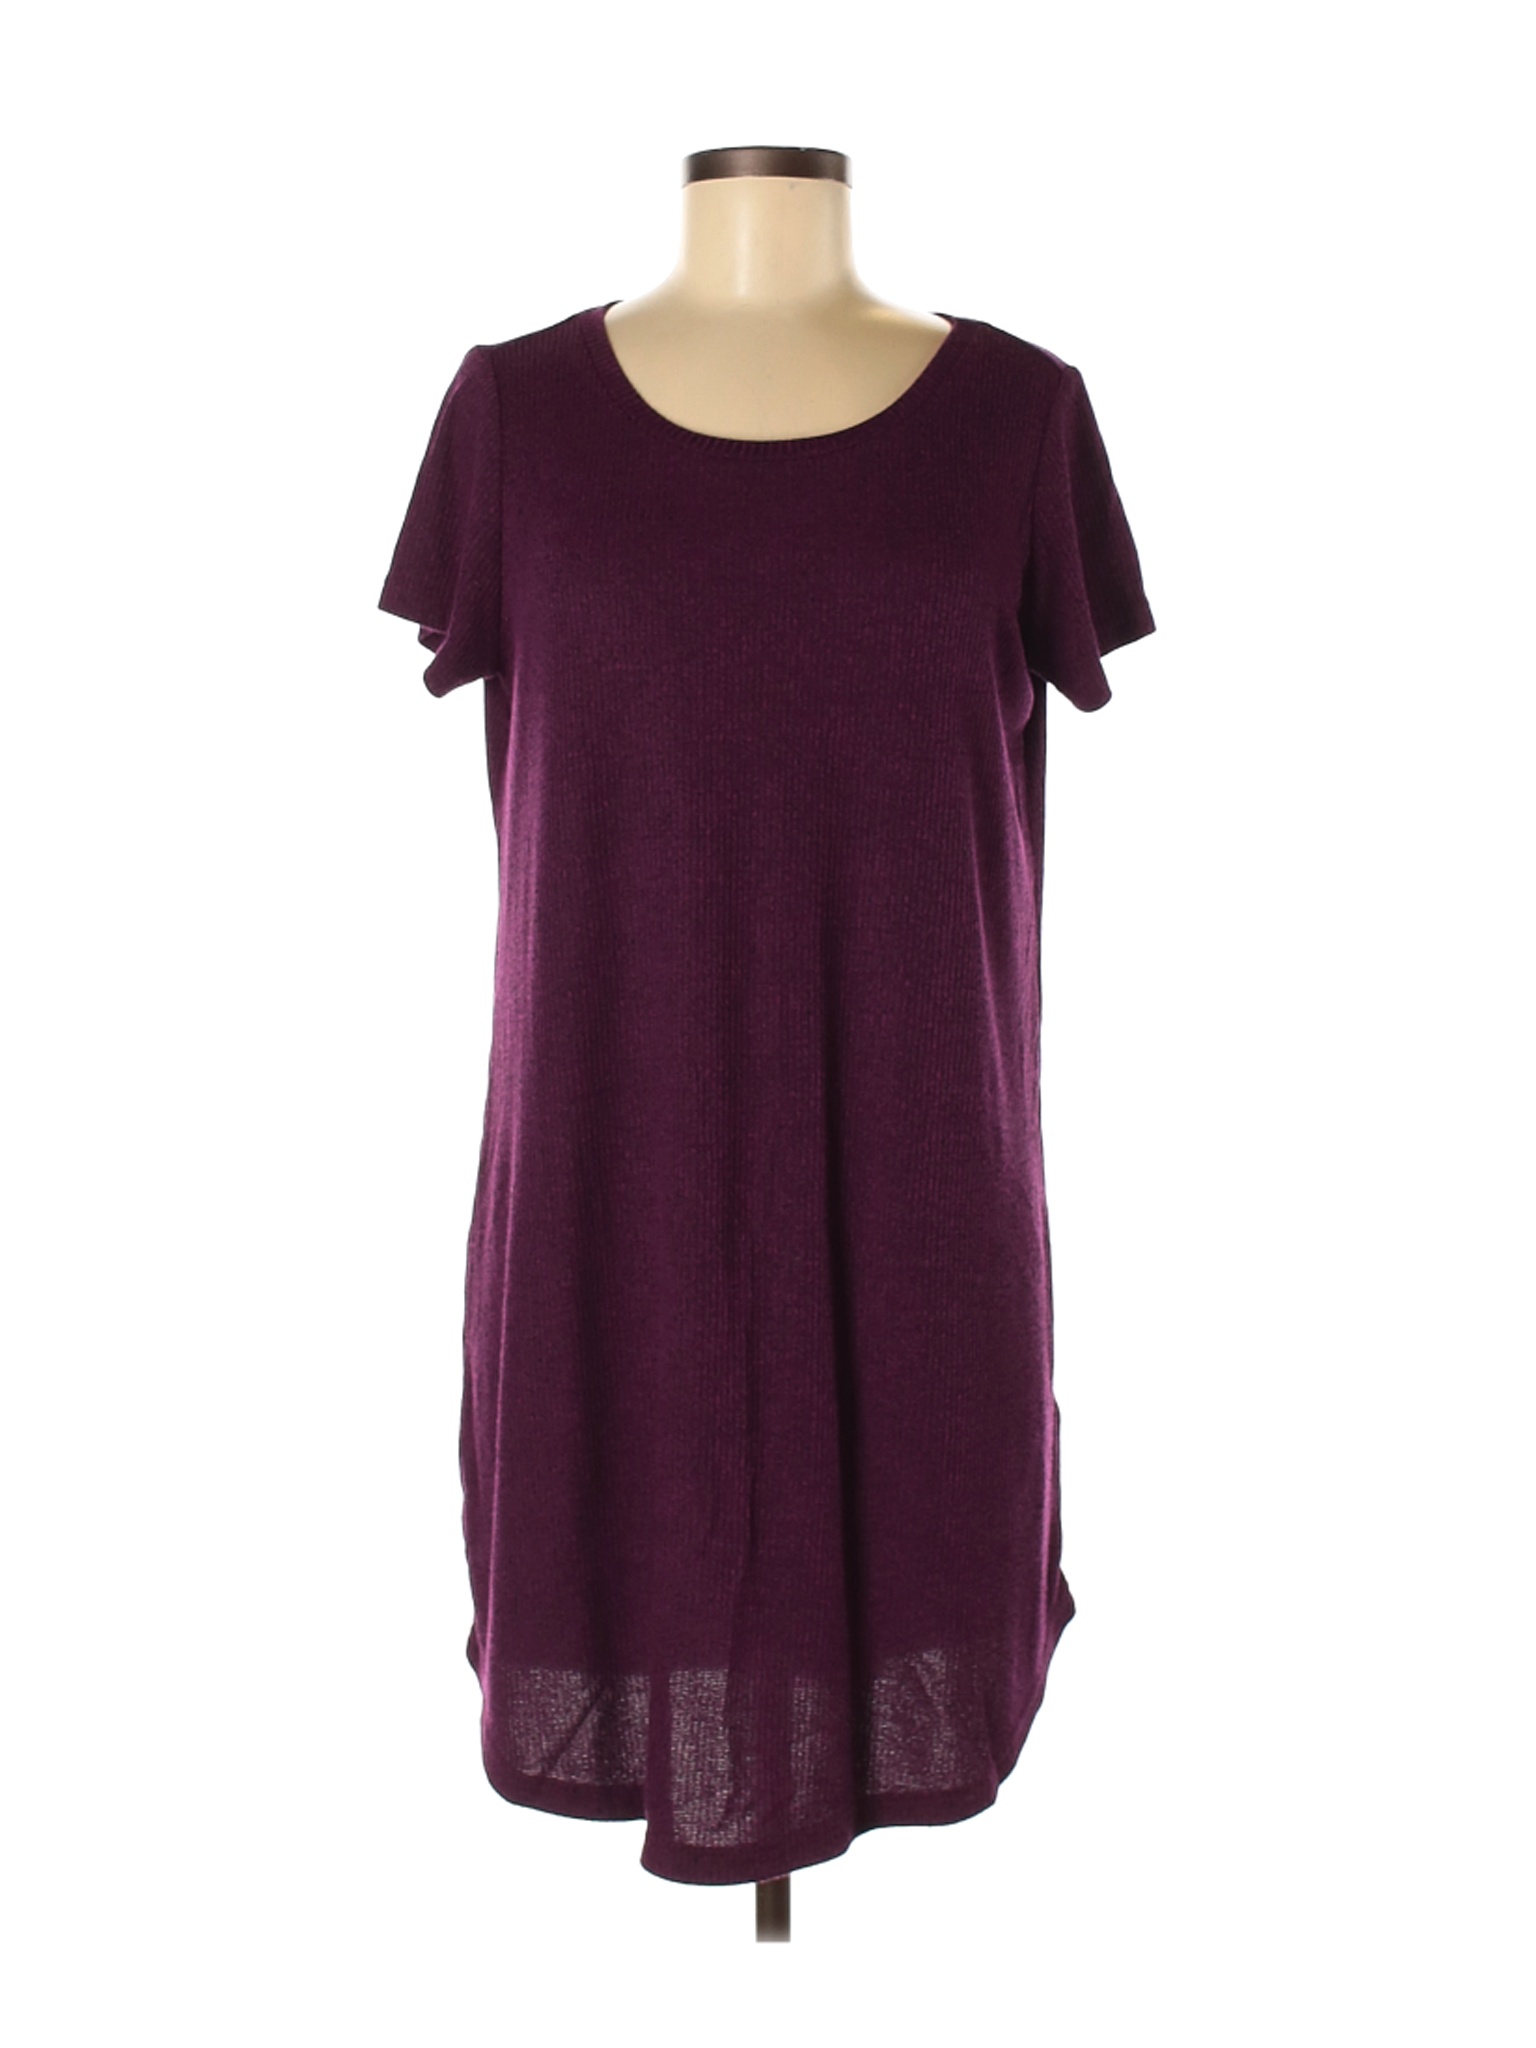 Cotton On Women Purple Casual Dress M | eBay